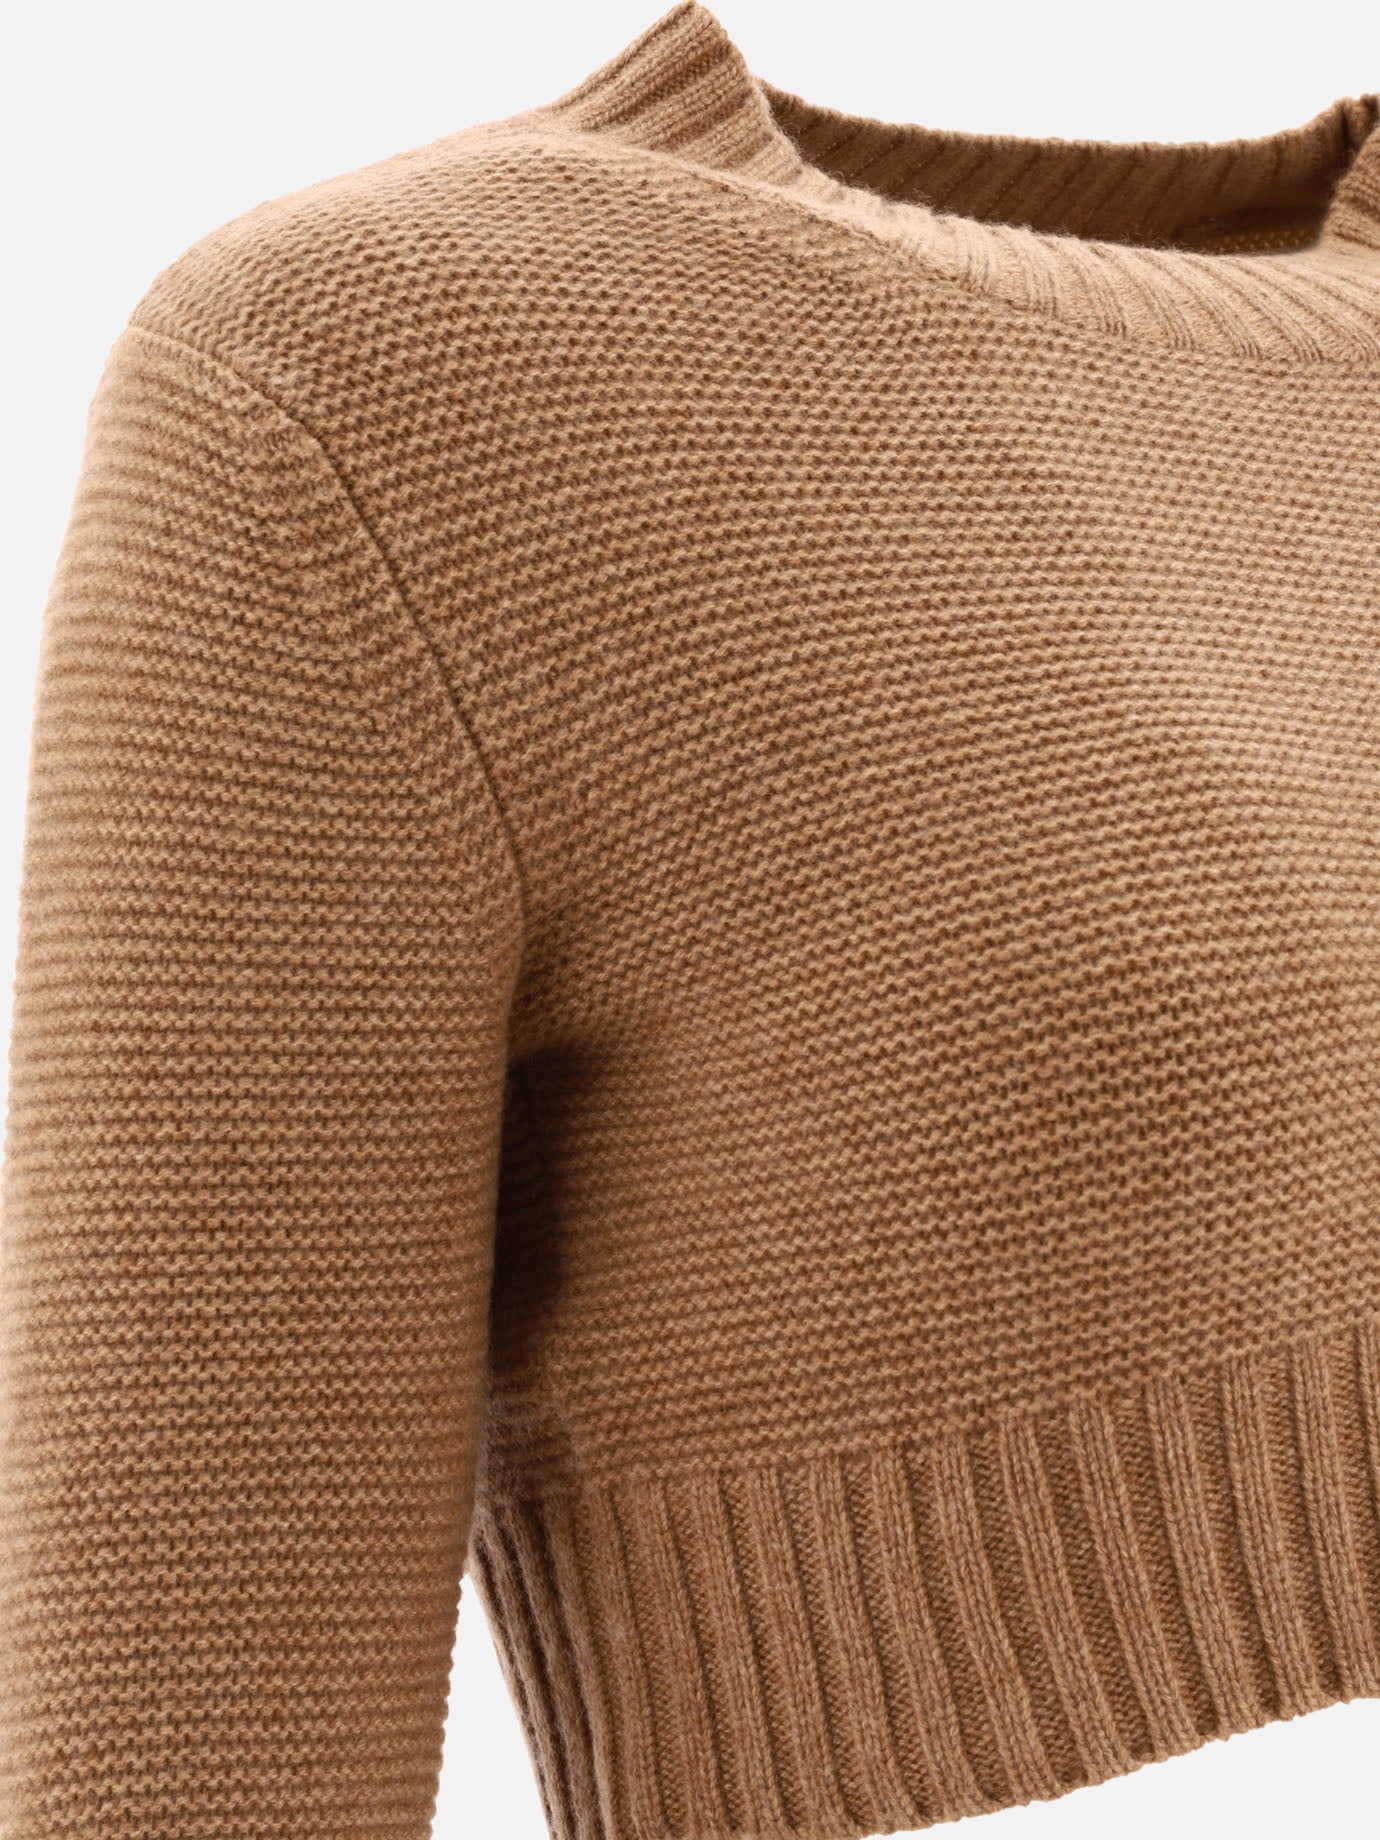 "Kaya" sweater